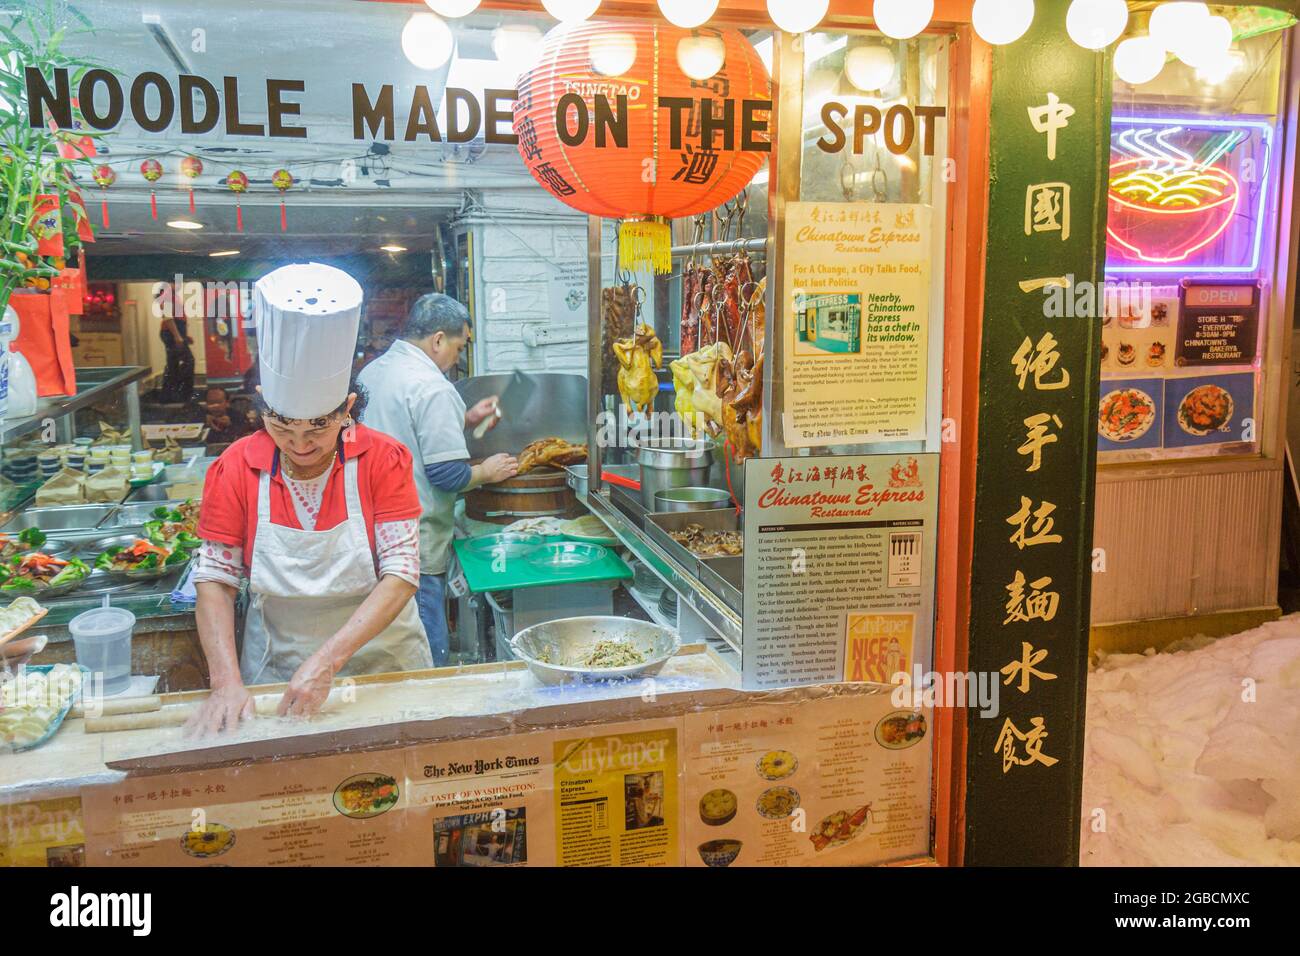 Washington DC, Chinatown 6th Street NW, Chinatown Express ristorante cucina cinese, finestre che fanno noodles fatti a mano anatra donna asiatica, Foto Stock